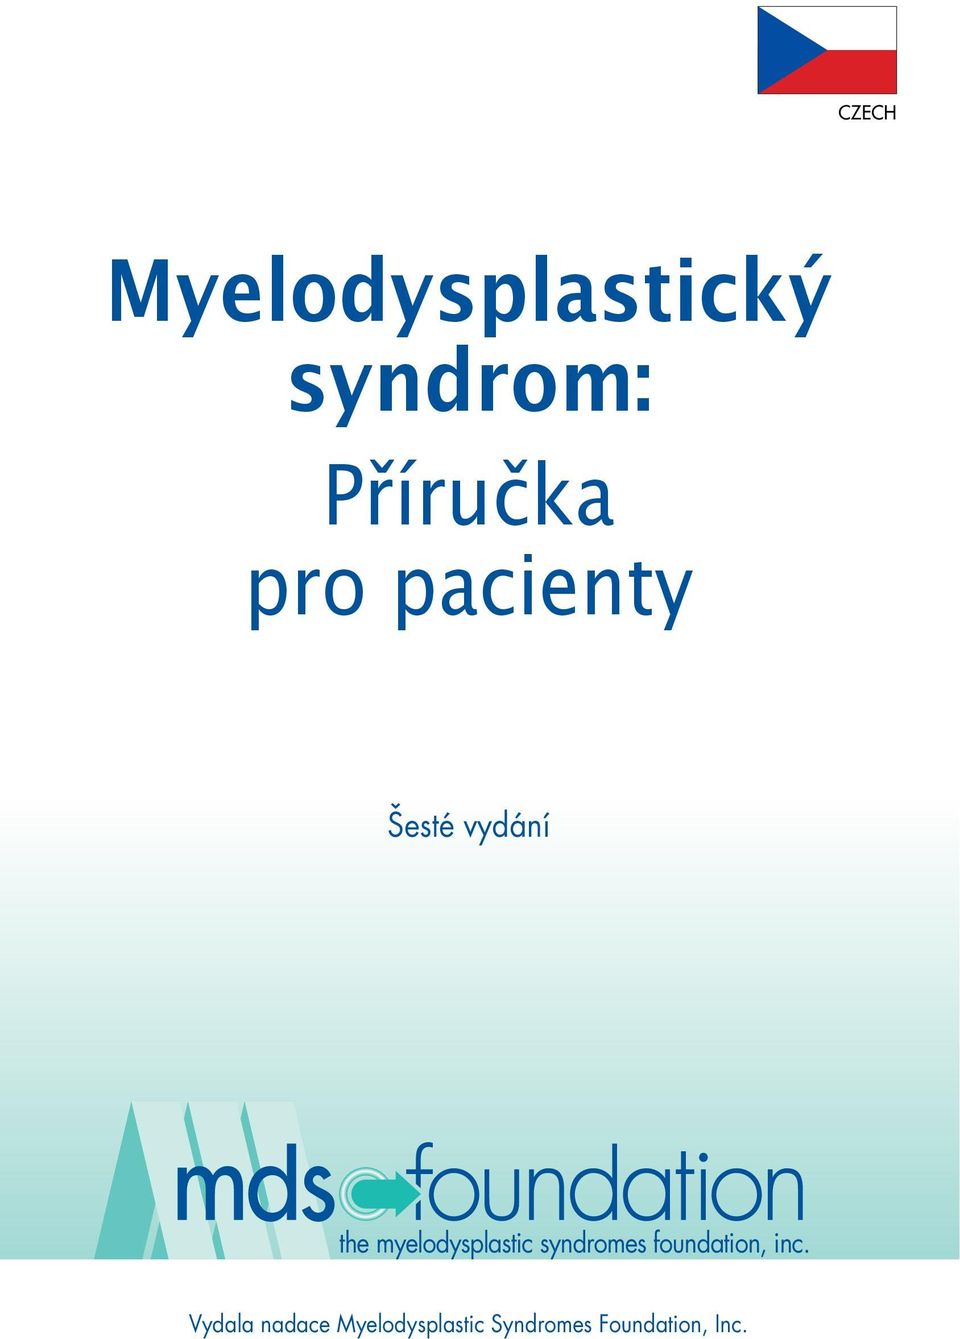 myelodysplastic syndromes foundation, inc.